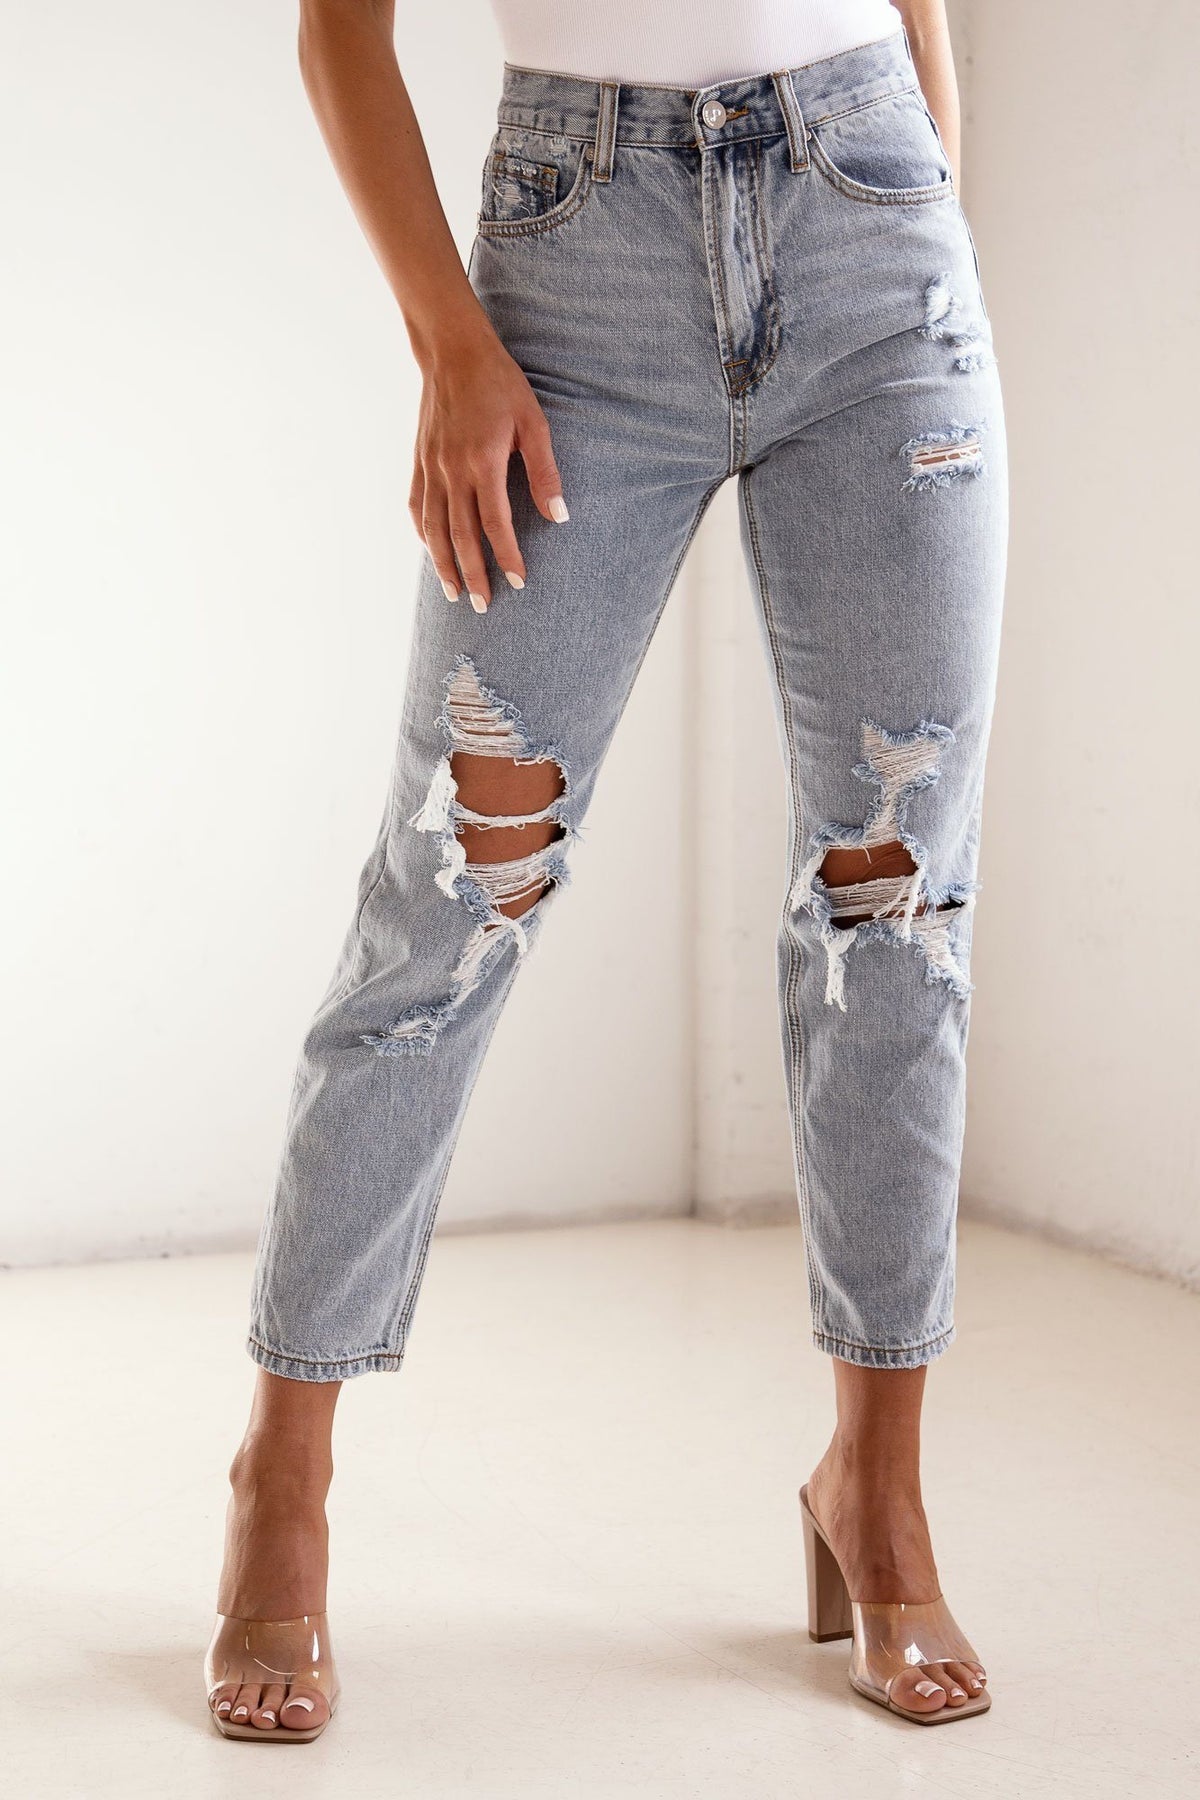 CELINE HOMME Slim-Fit Distressed Denim Jeans for Men | MR PORTER